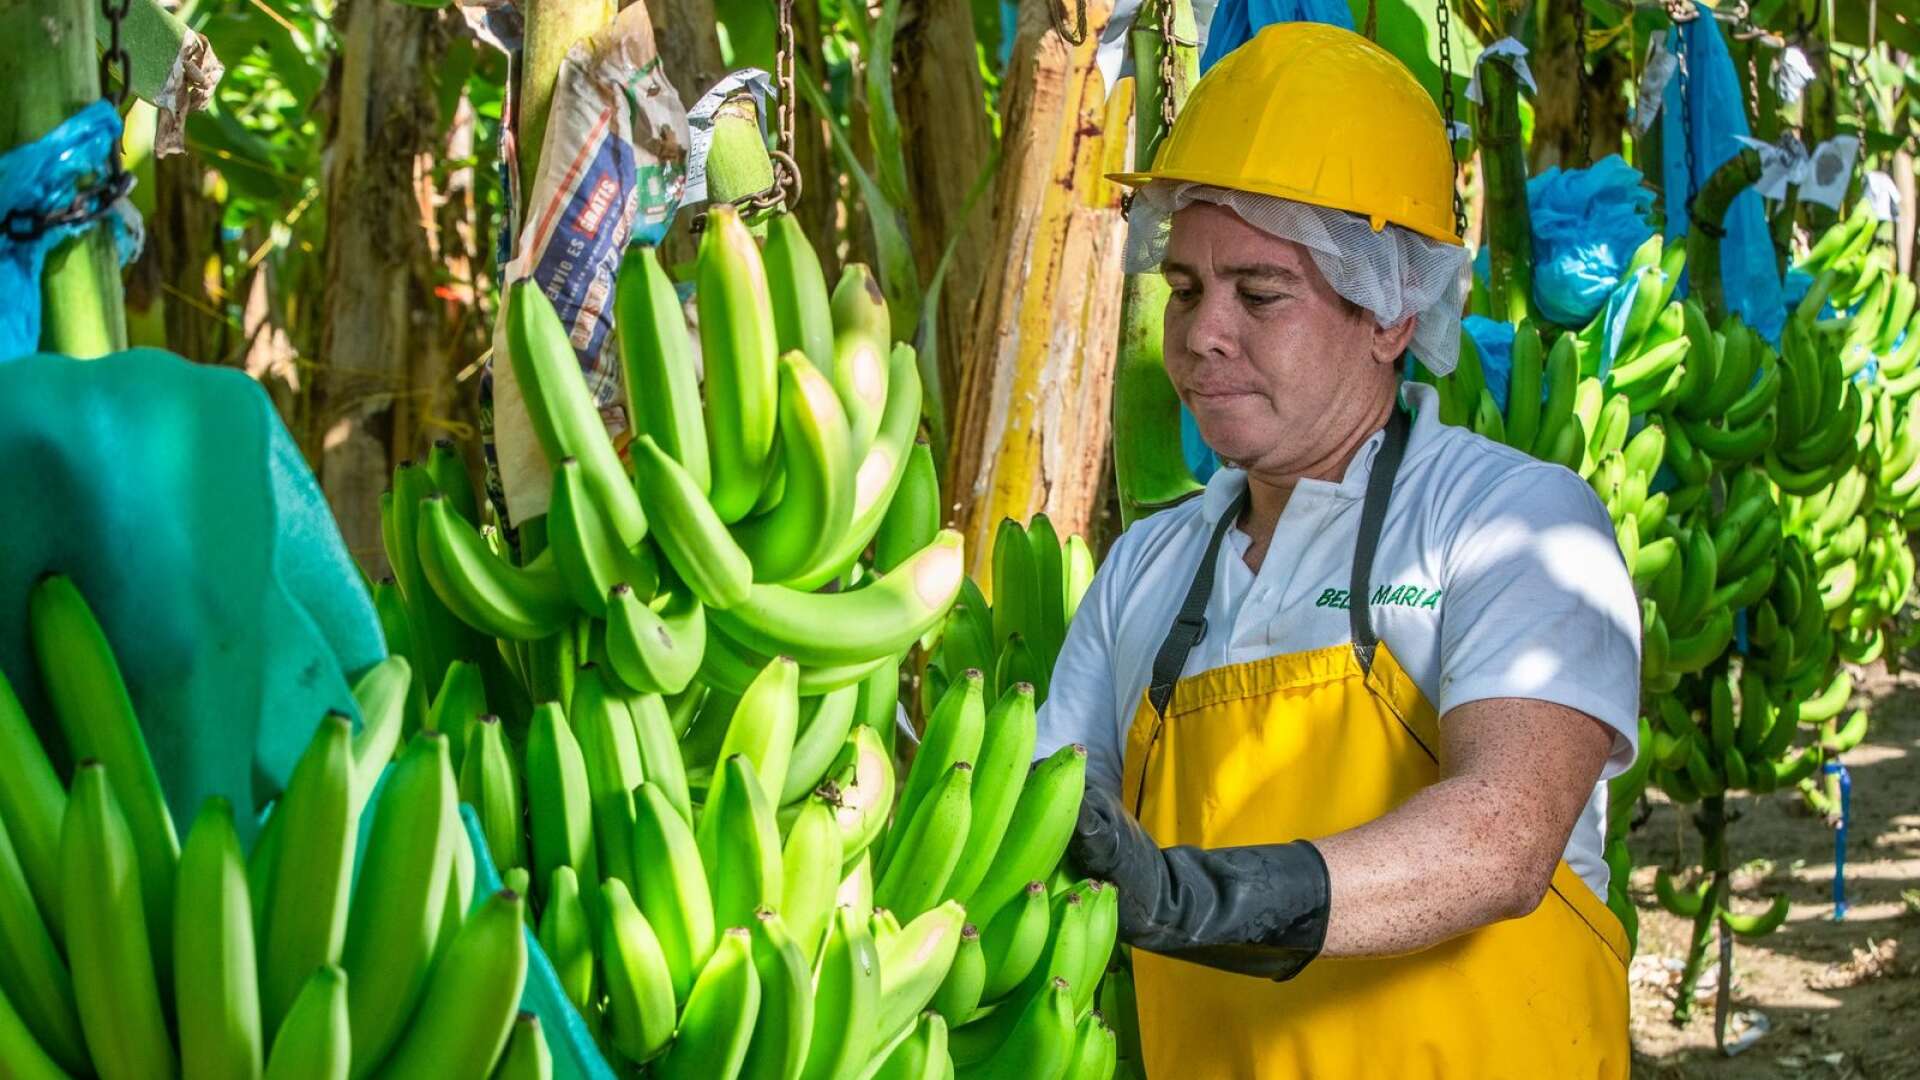 Genom att välja Fairtrade-märkta bananer kan vi bidra till att odlare får en ersättning som det faktiskt går att försörja sig på, skriver Hewan Temesghen.